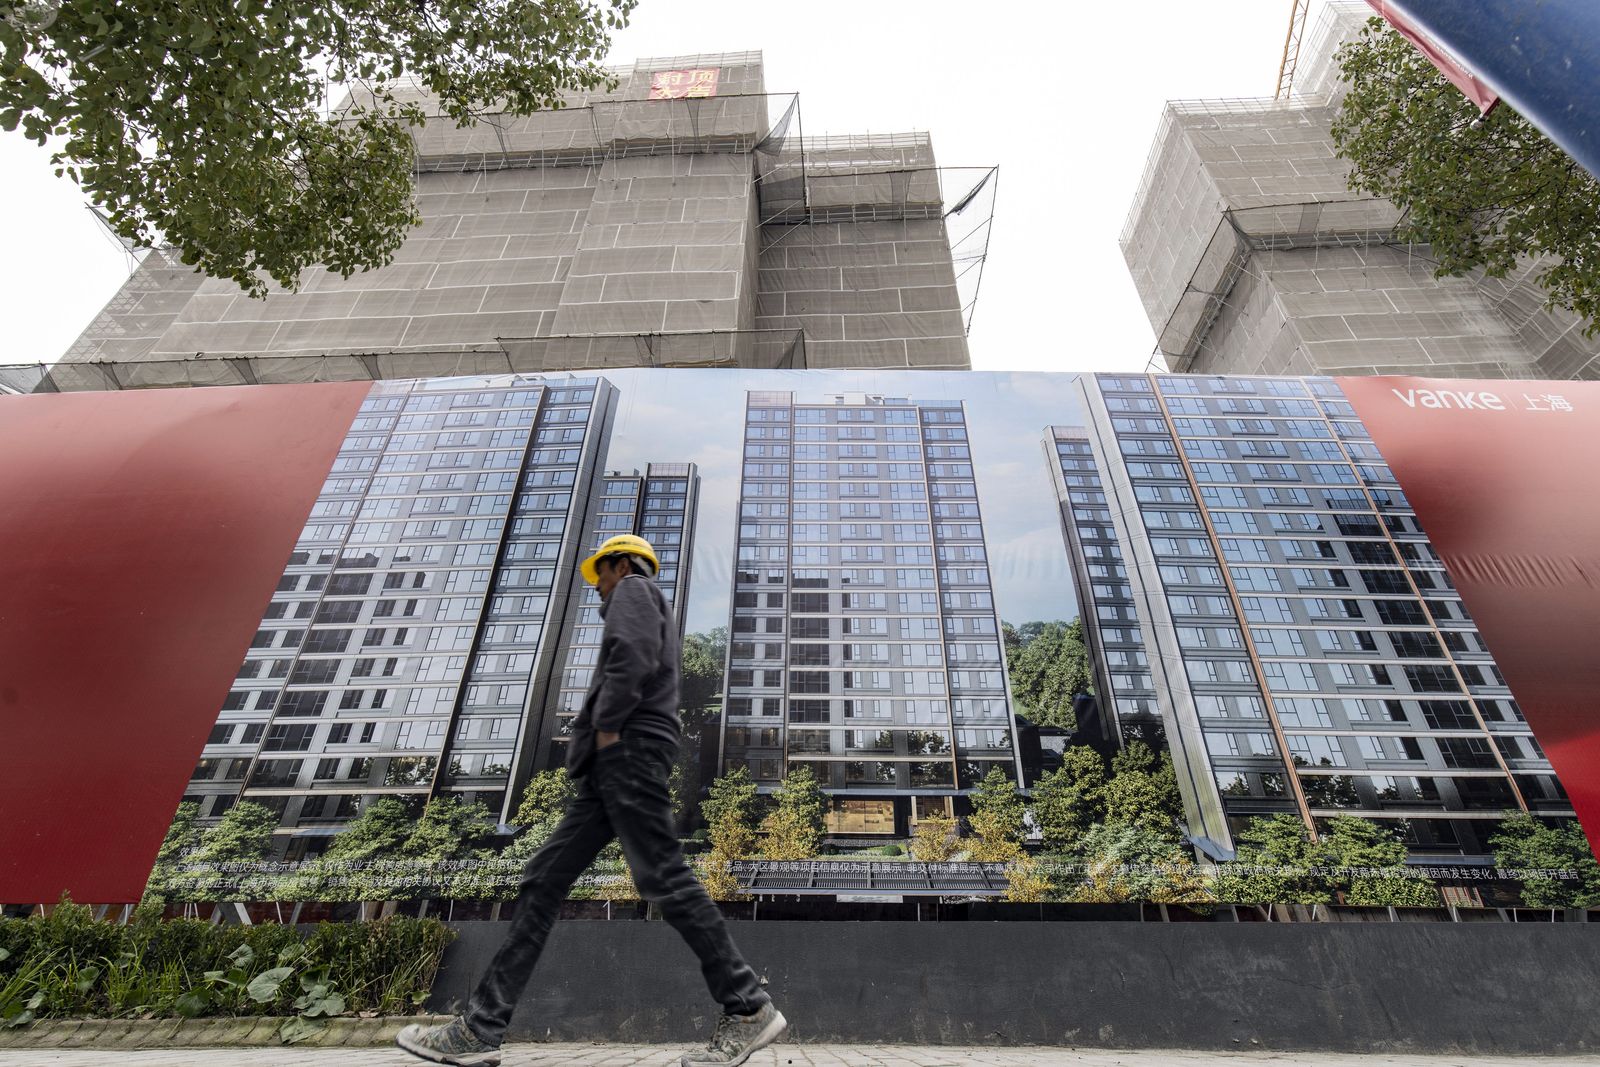 الصين تخصص 41 مليار دولار لشراء الدولة المنازل غير المبيعة